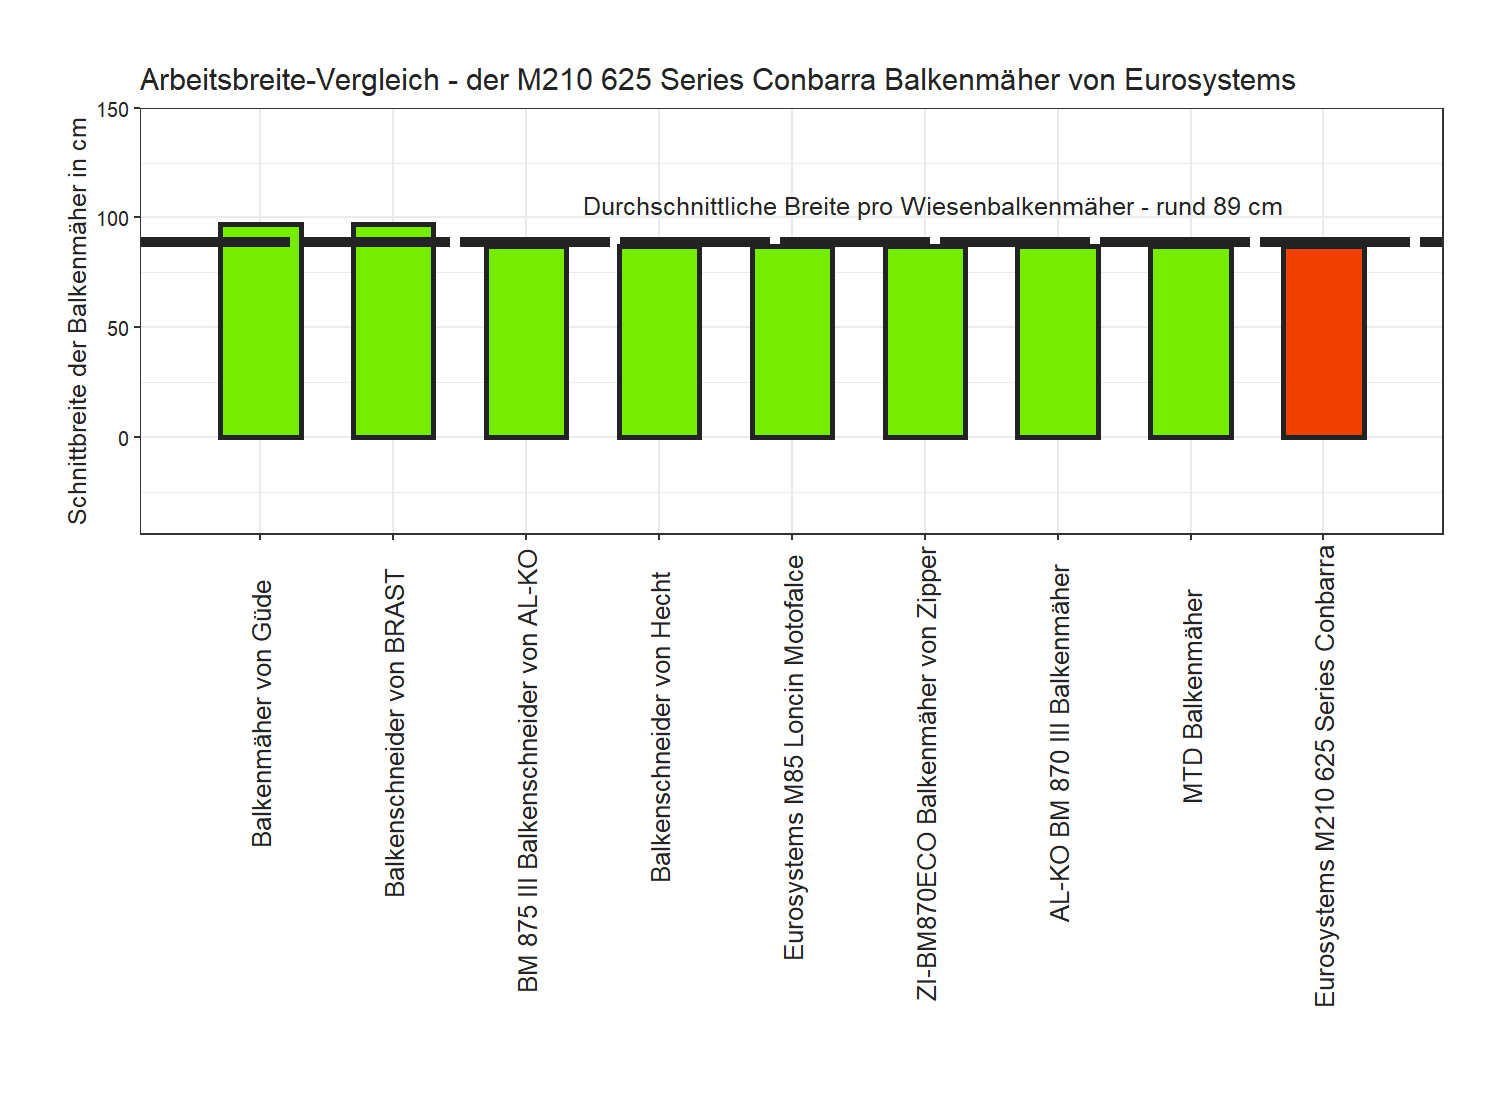 Schnittbreite-Vergleich von dem Eurosystems Wiesenbalkenmäher M210 625 Series Conbarra